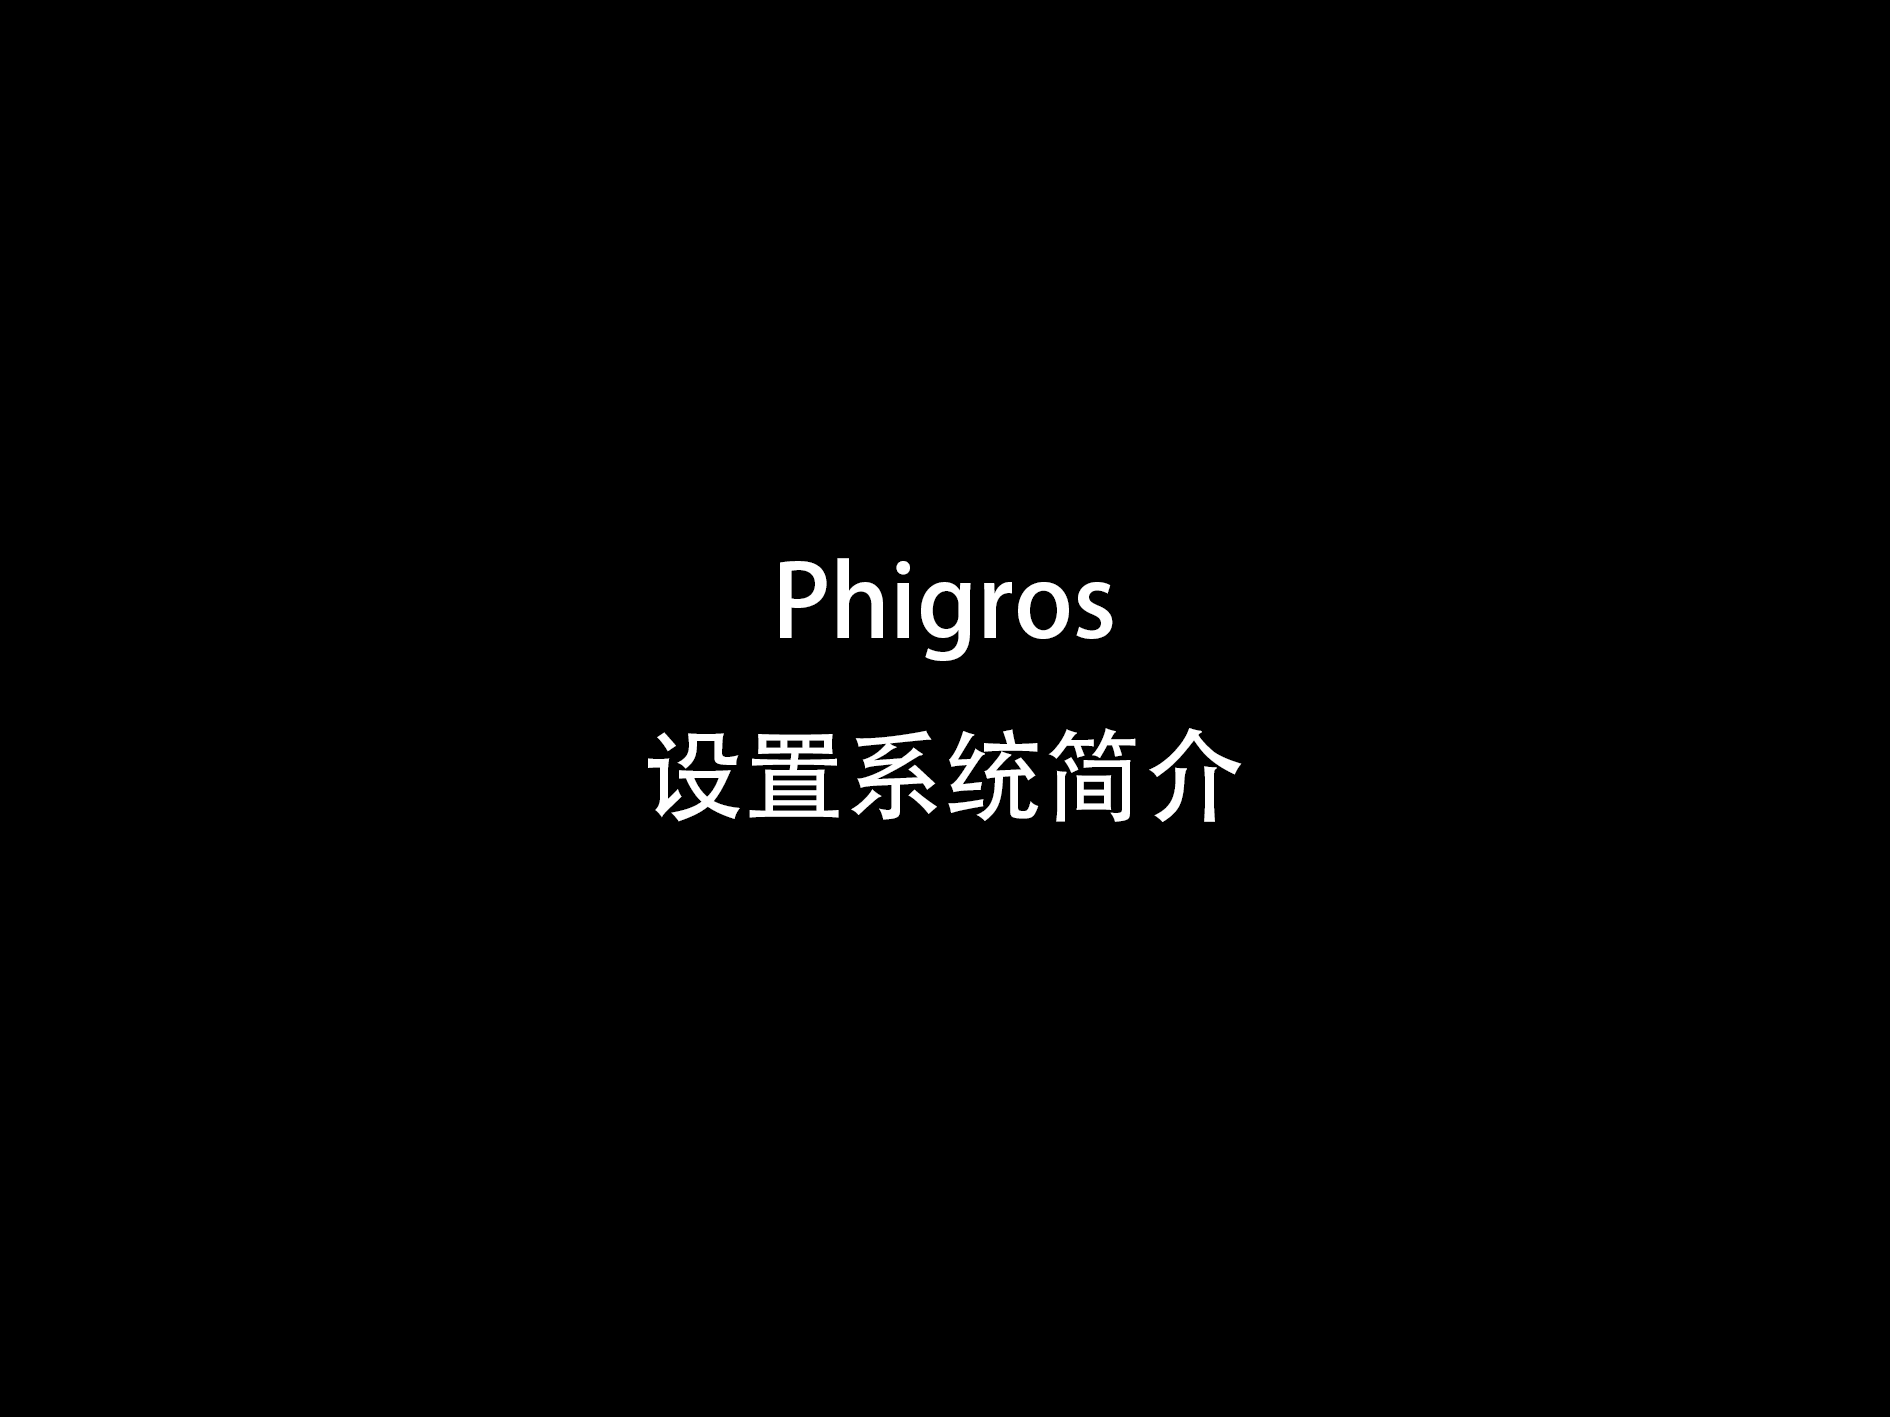 【新人看这里】Phigros设置系统介绍和使用方法